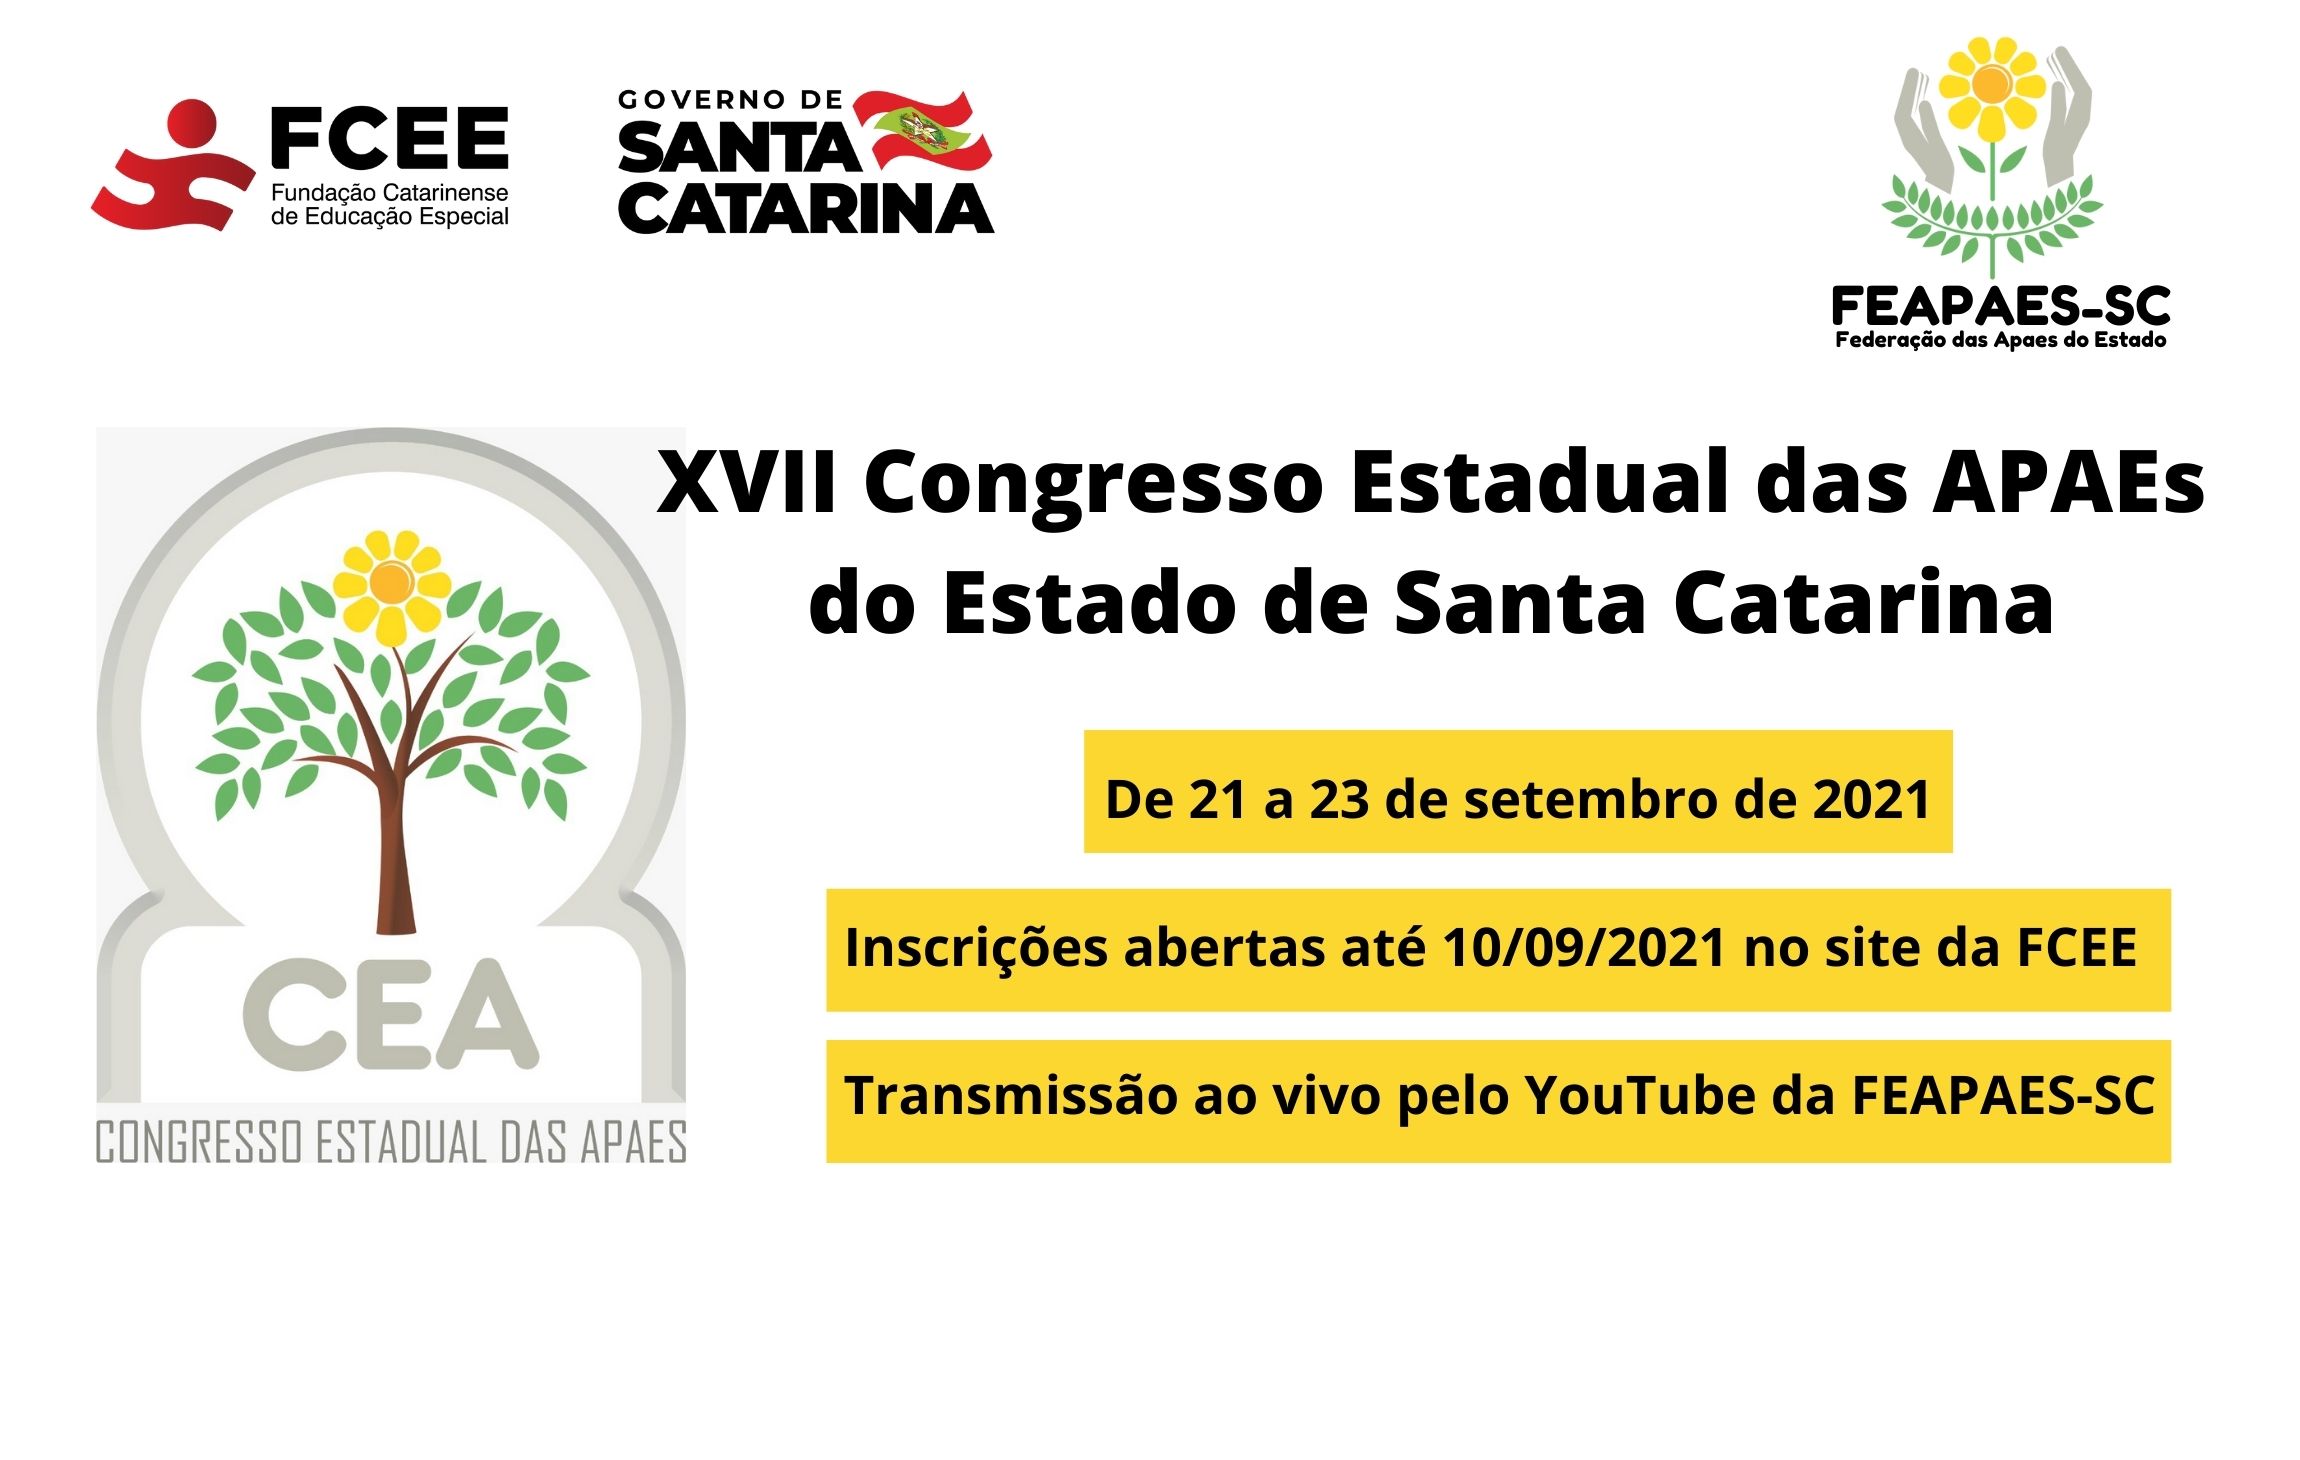 Símbolo apaes e texto XVII Congresso Estadual das APAEs do Estado de Santa Catarina - 21 a 23 de setembro de 2021 - transmissão ao vivo YouTube Feapaesc - Inscriçóes até 10/09 site fcee